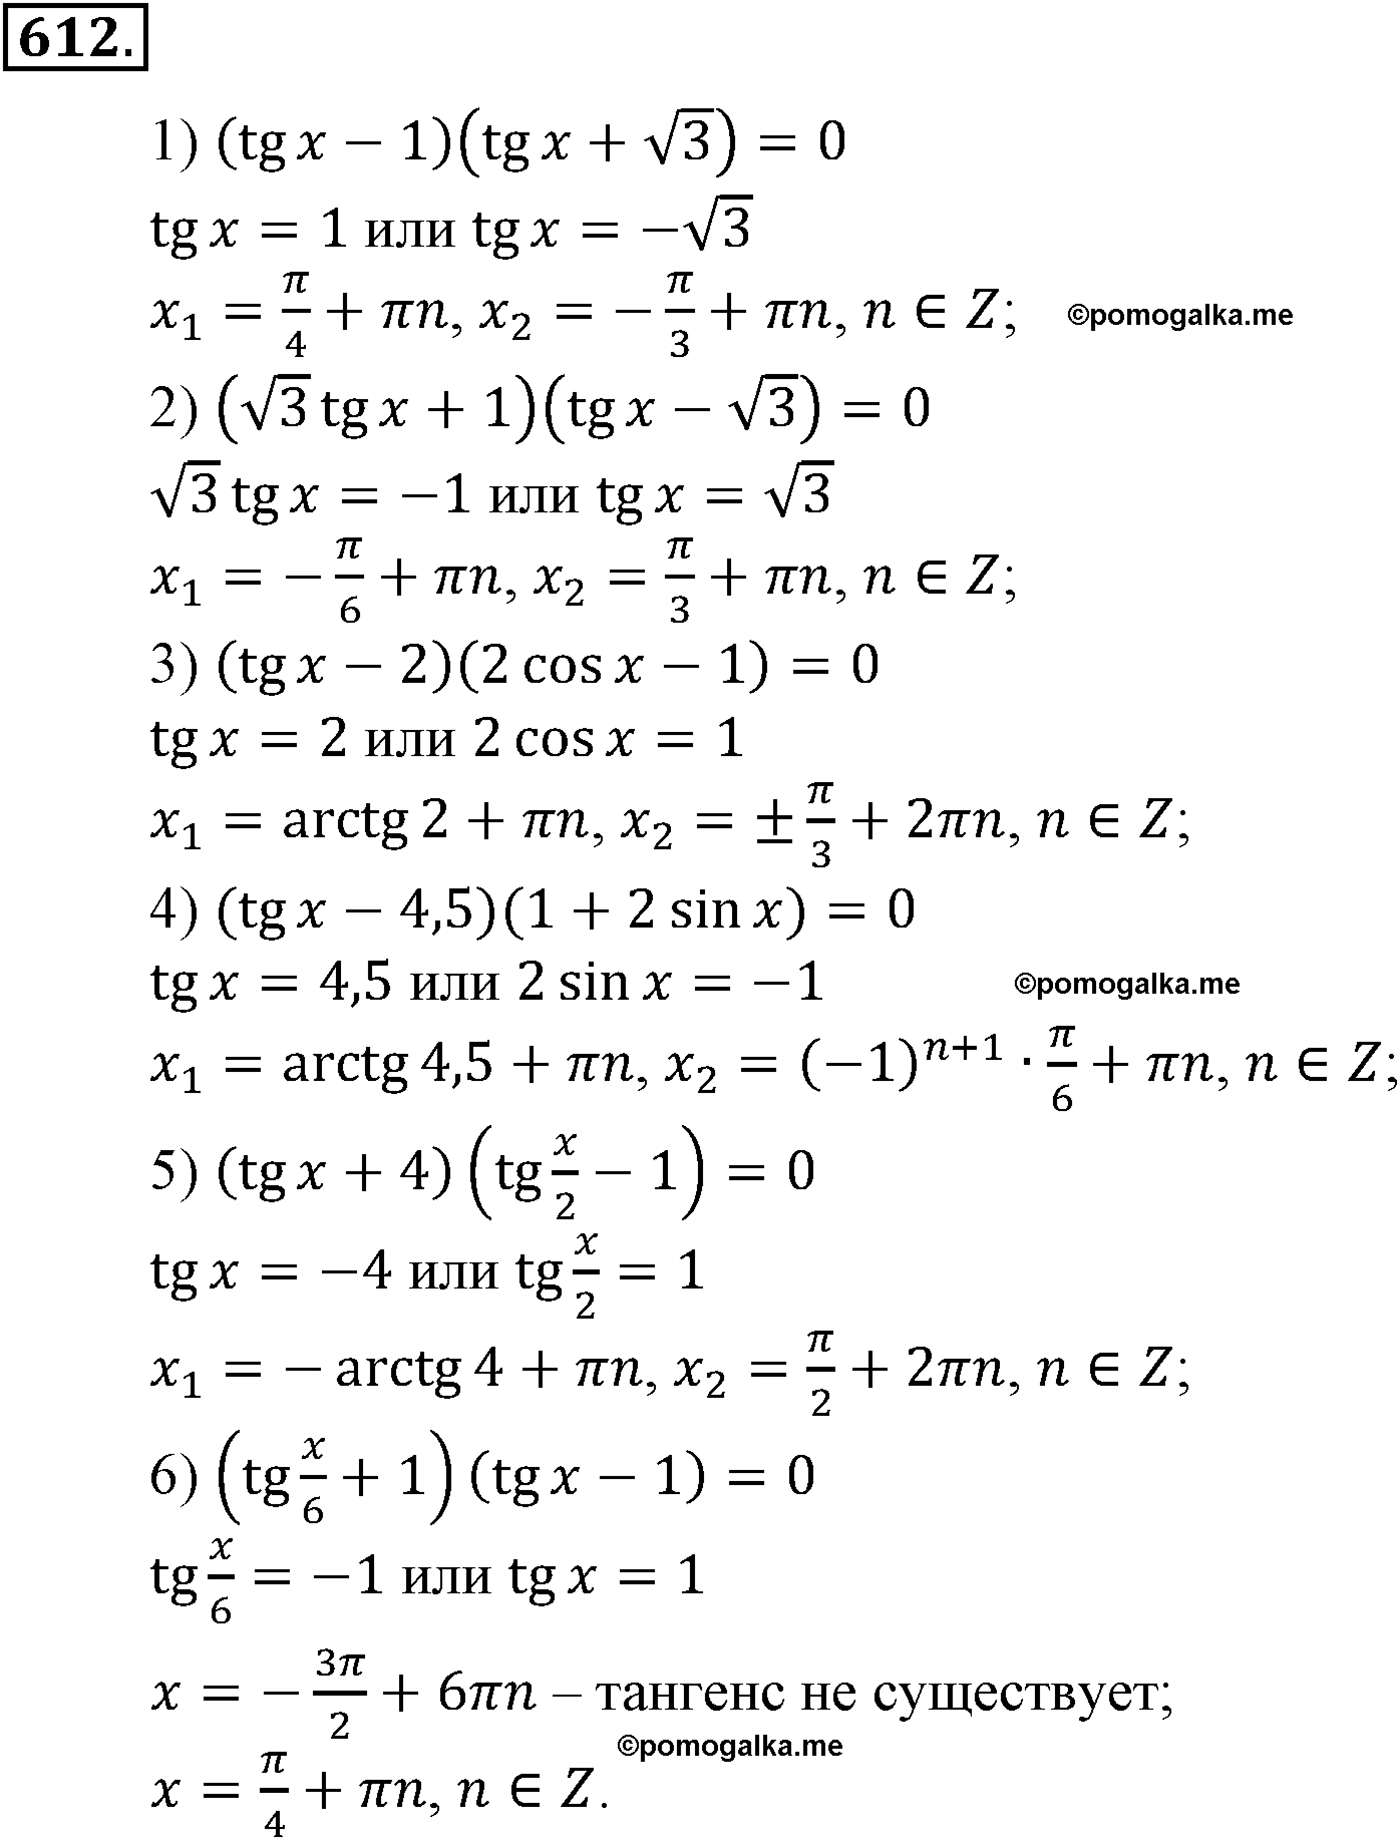 разбор задачи №612 по алгебре за 10-11 класс из учебника Алимова, Колягина